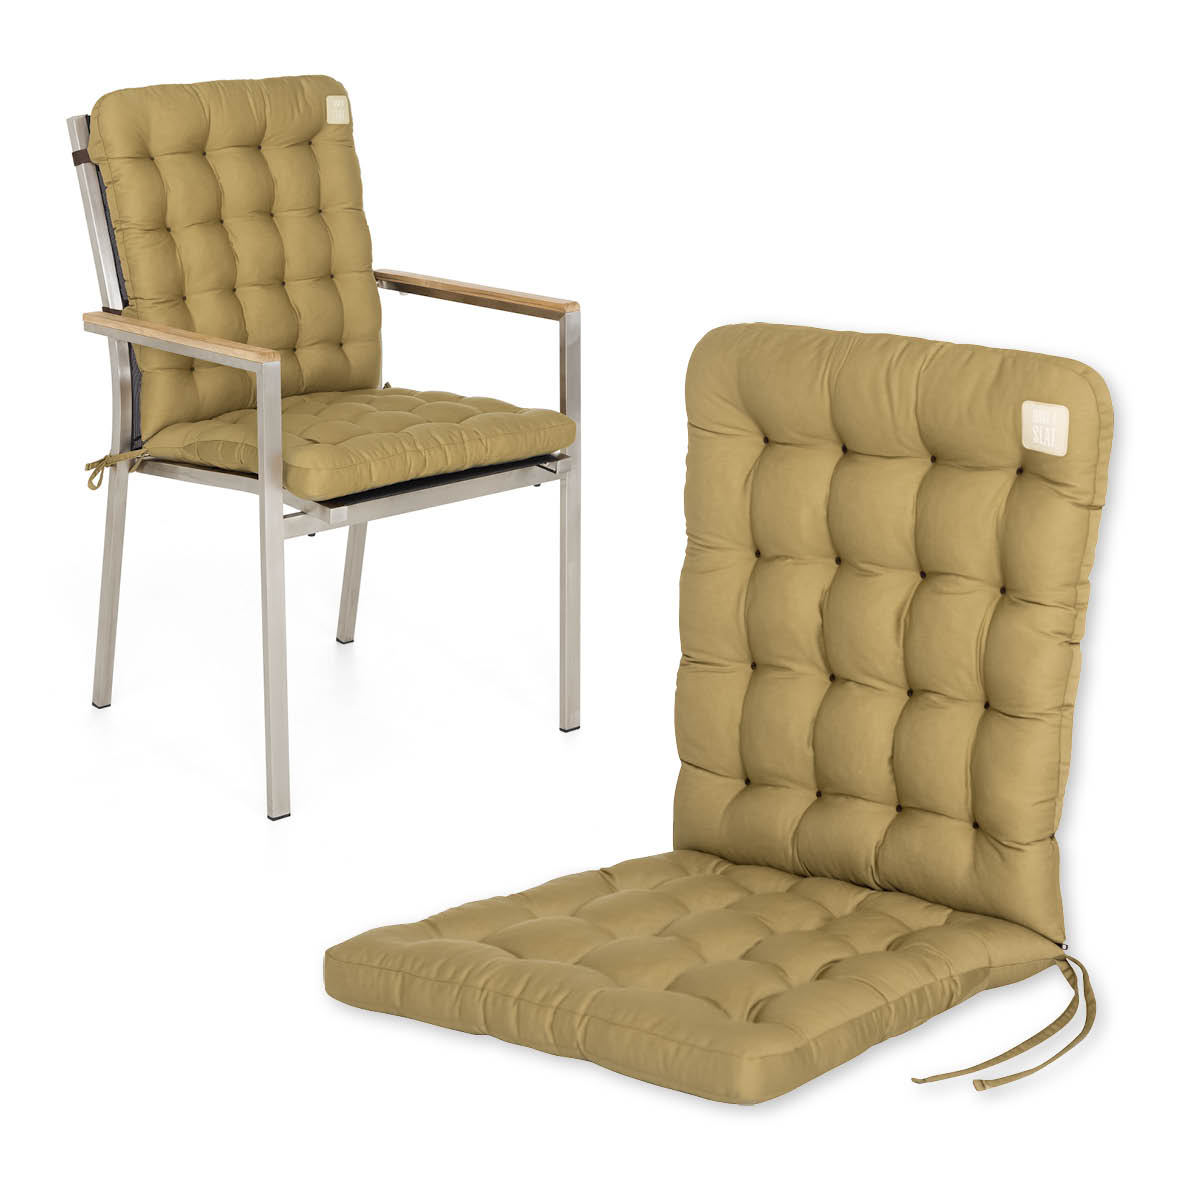 Cuscino per sedia con schienale basso 100x48 cm | Beige